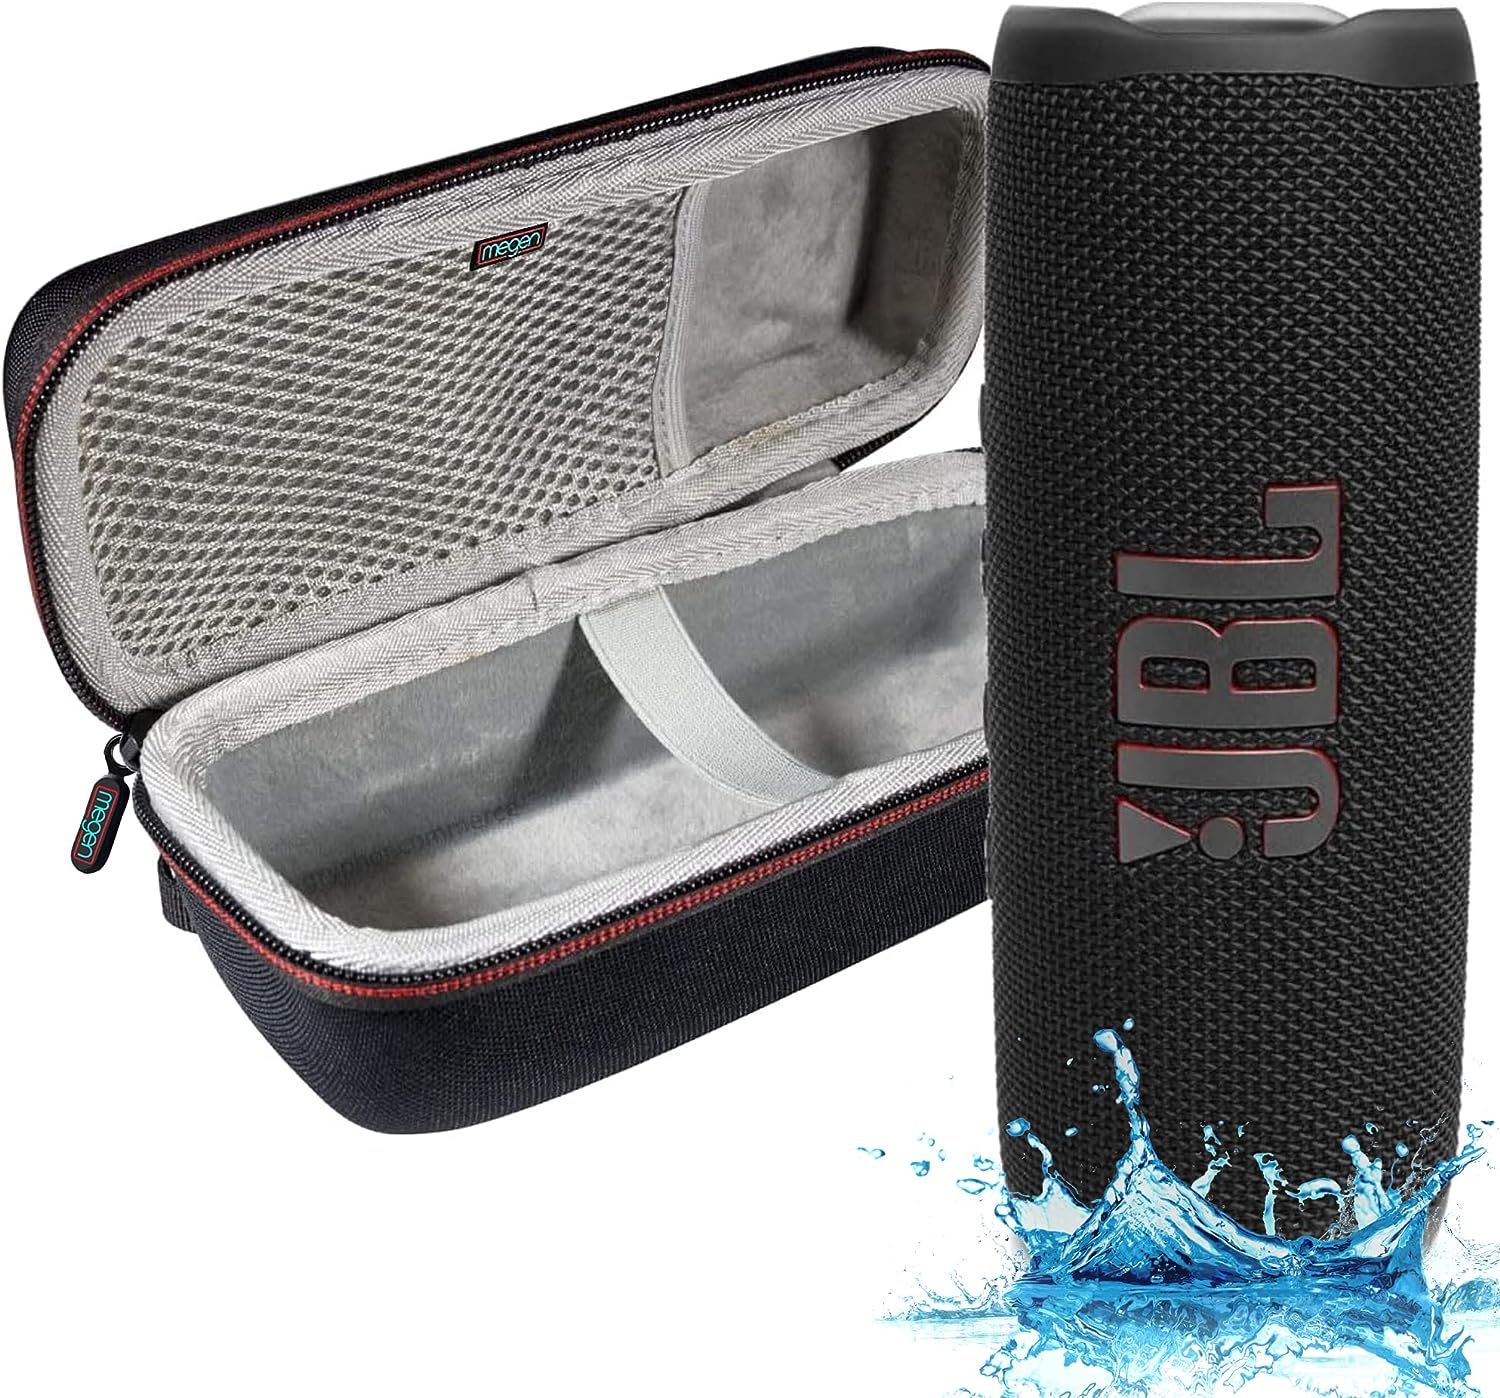 Review of JBL Flip 6 - Waterproof Portable Bluetooth Speaker with Megen Hardshell Case